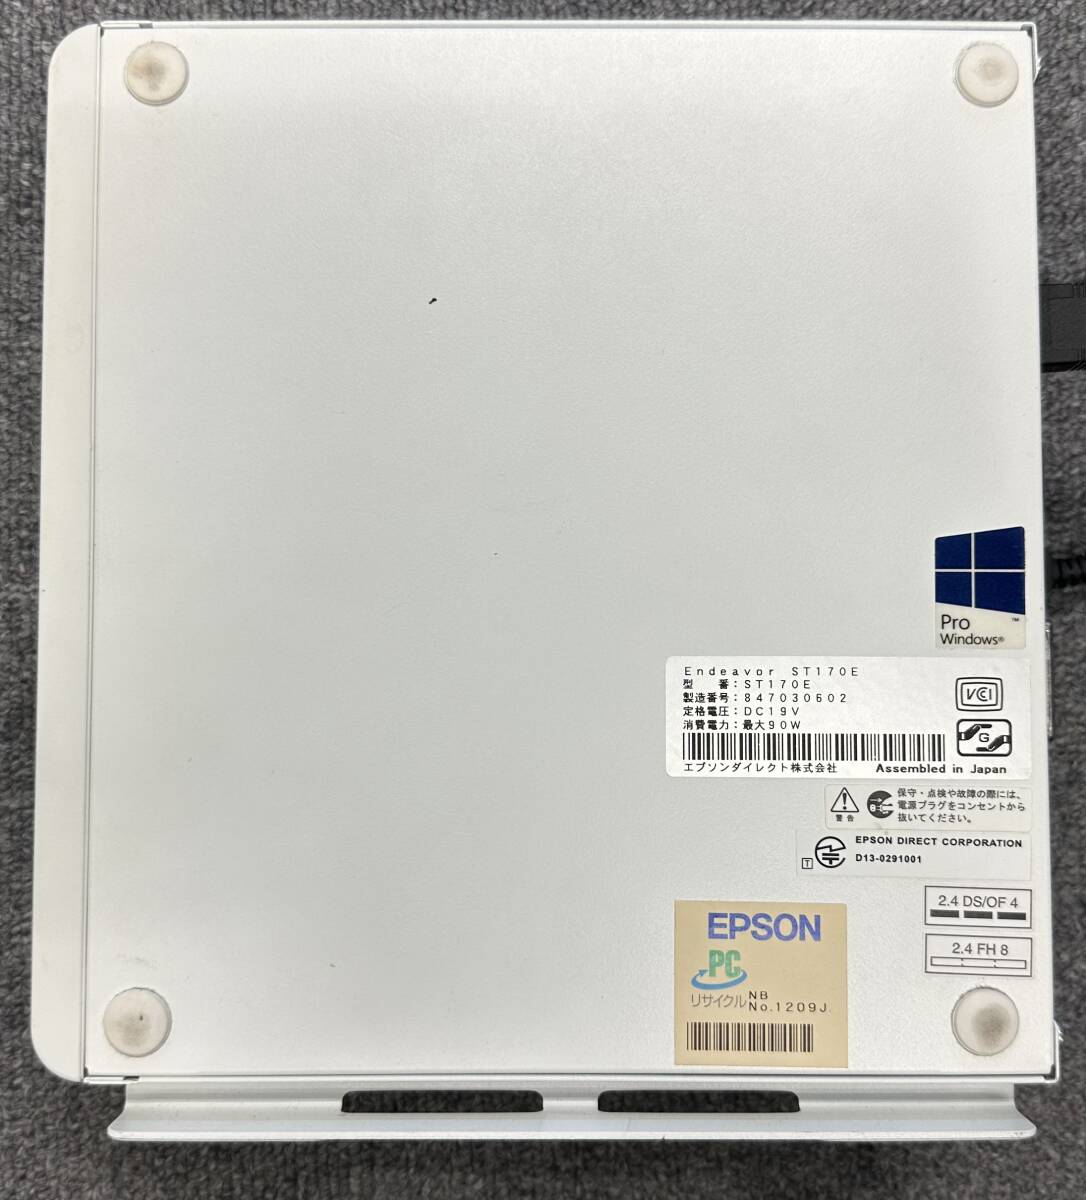 EPSON Endeavor ST170E Core i5 8GB ストレージ無 【動作未確認】ジャンク デスクトップ パソコン PC_画像4